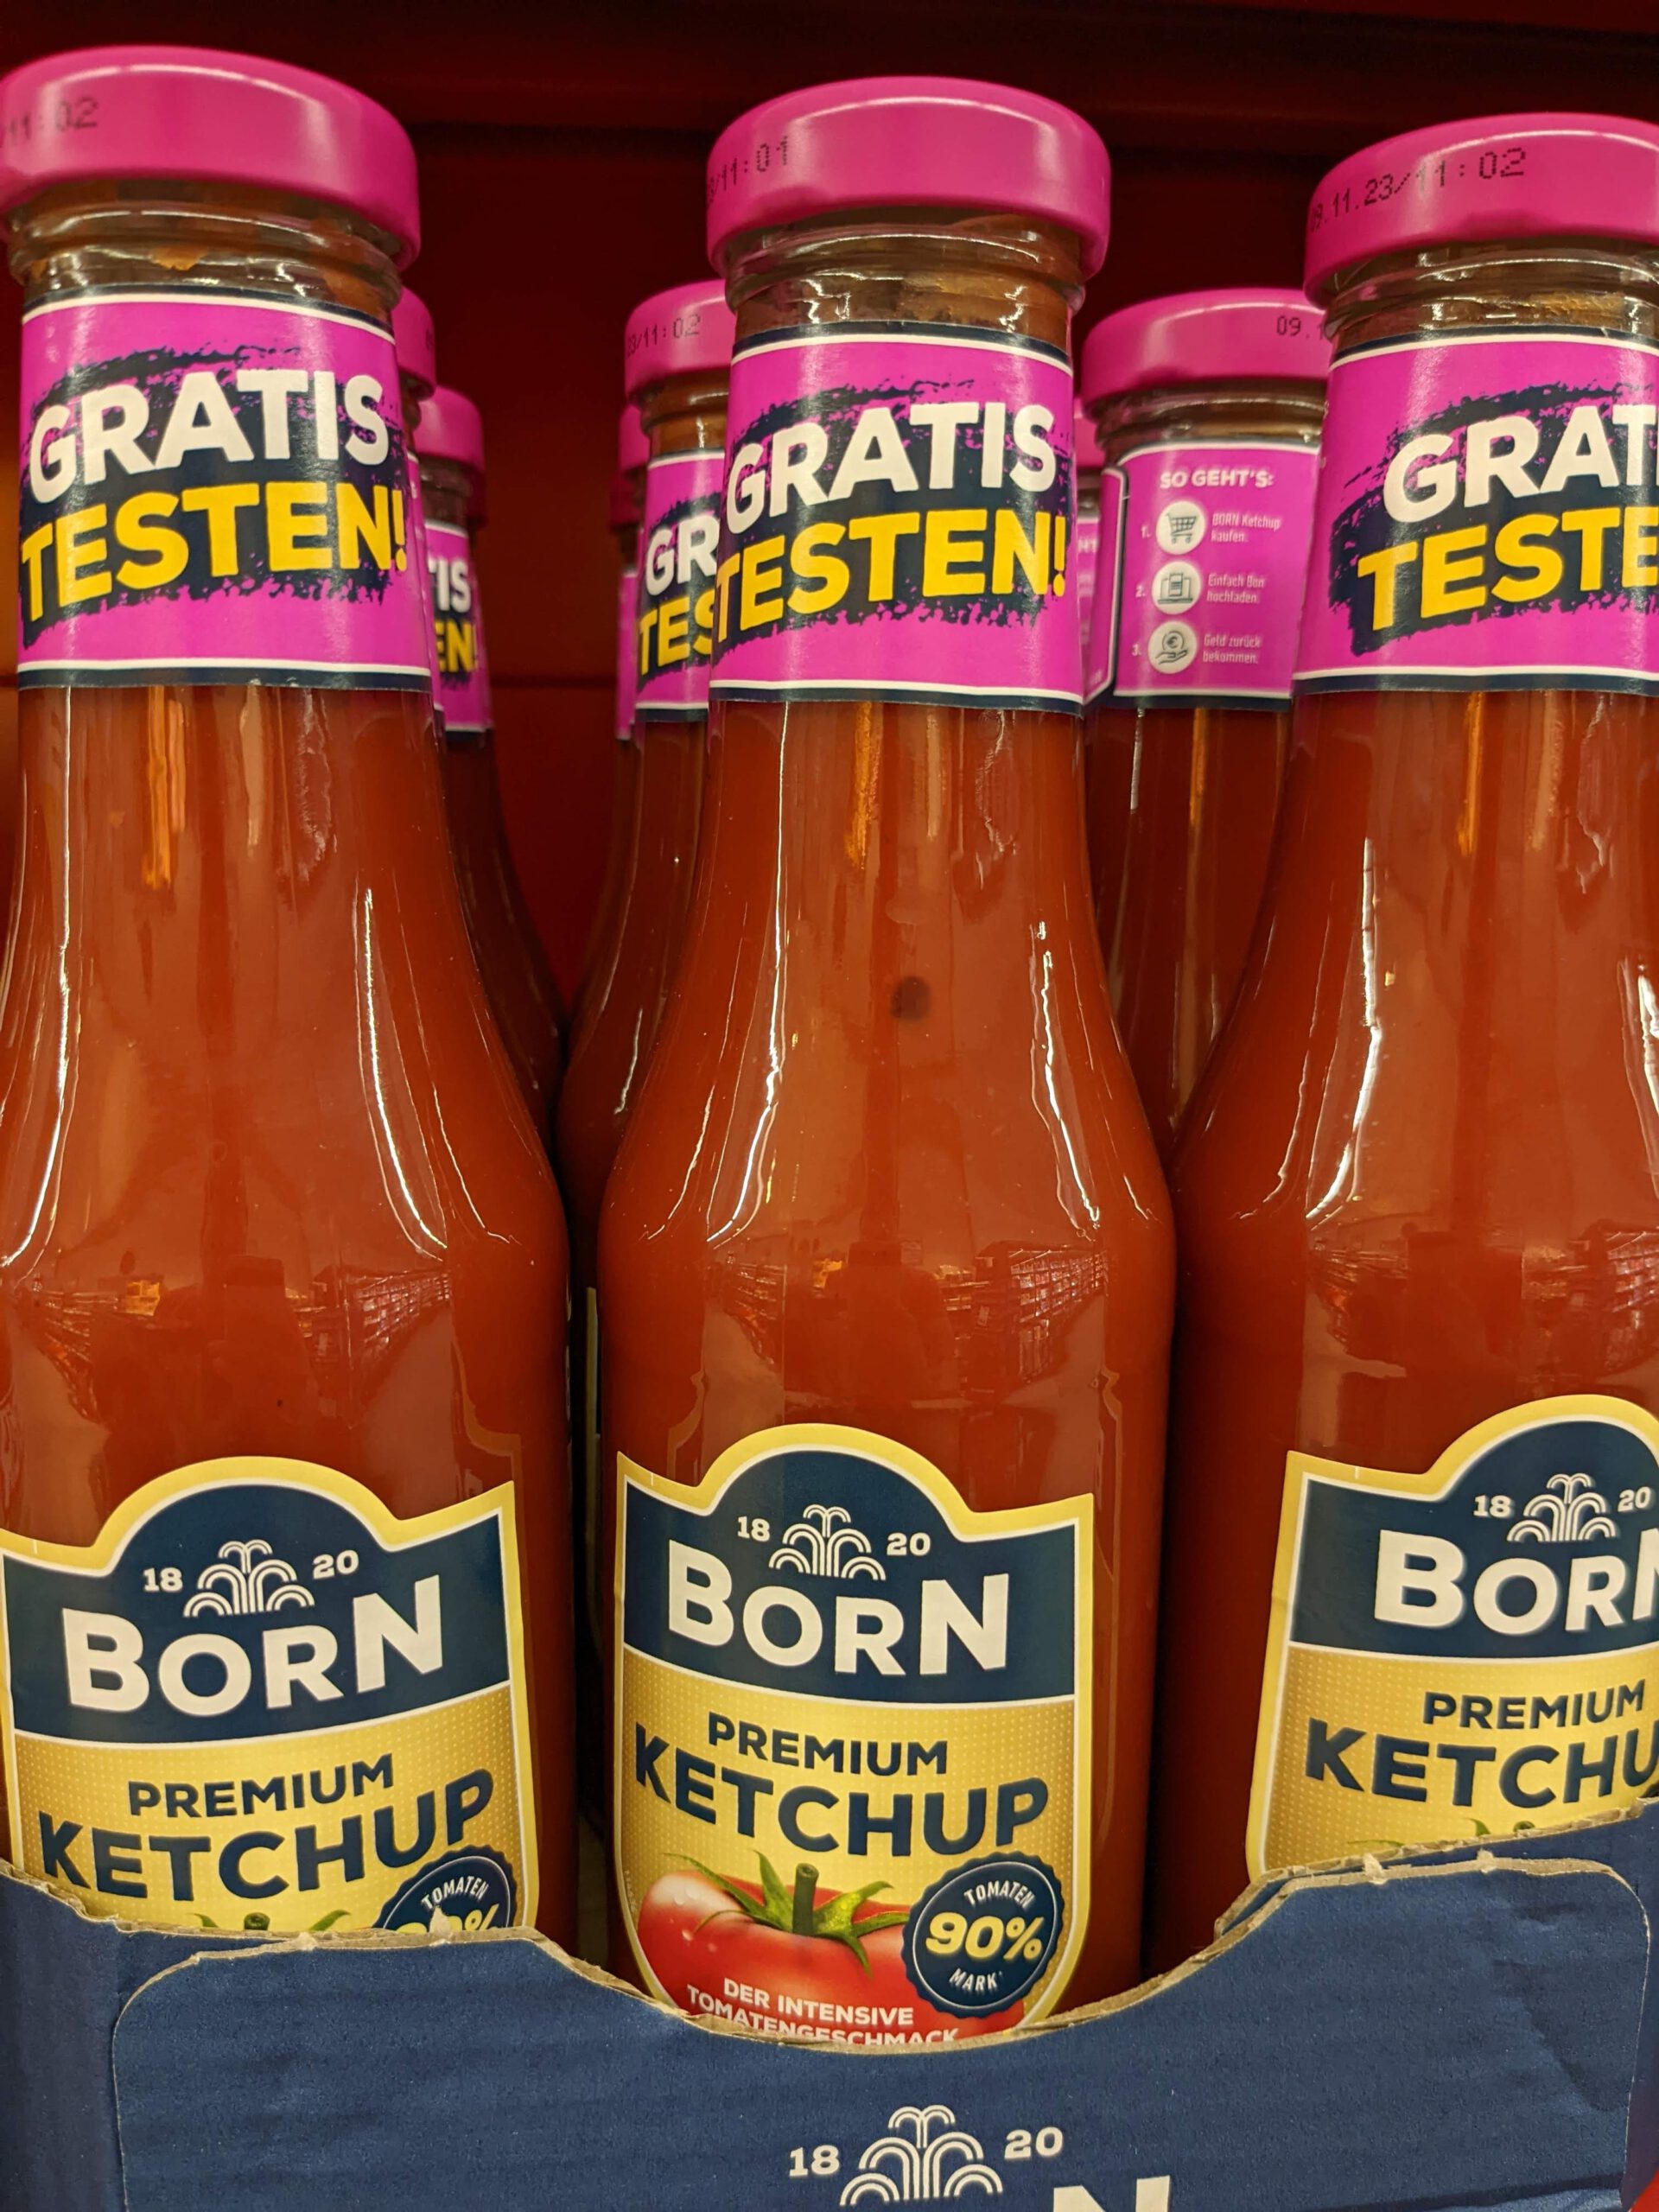 Born Ketchup gratis testen